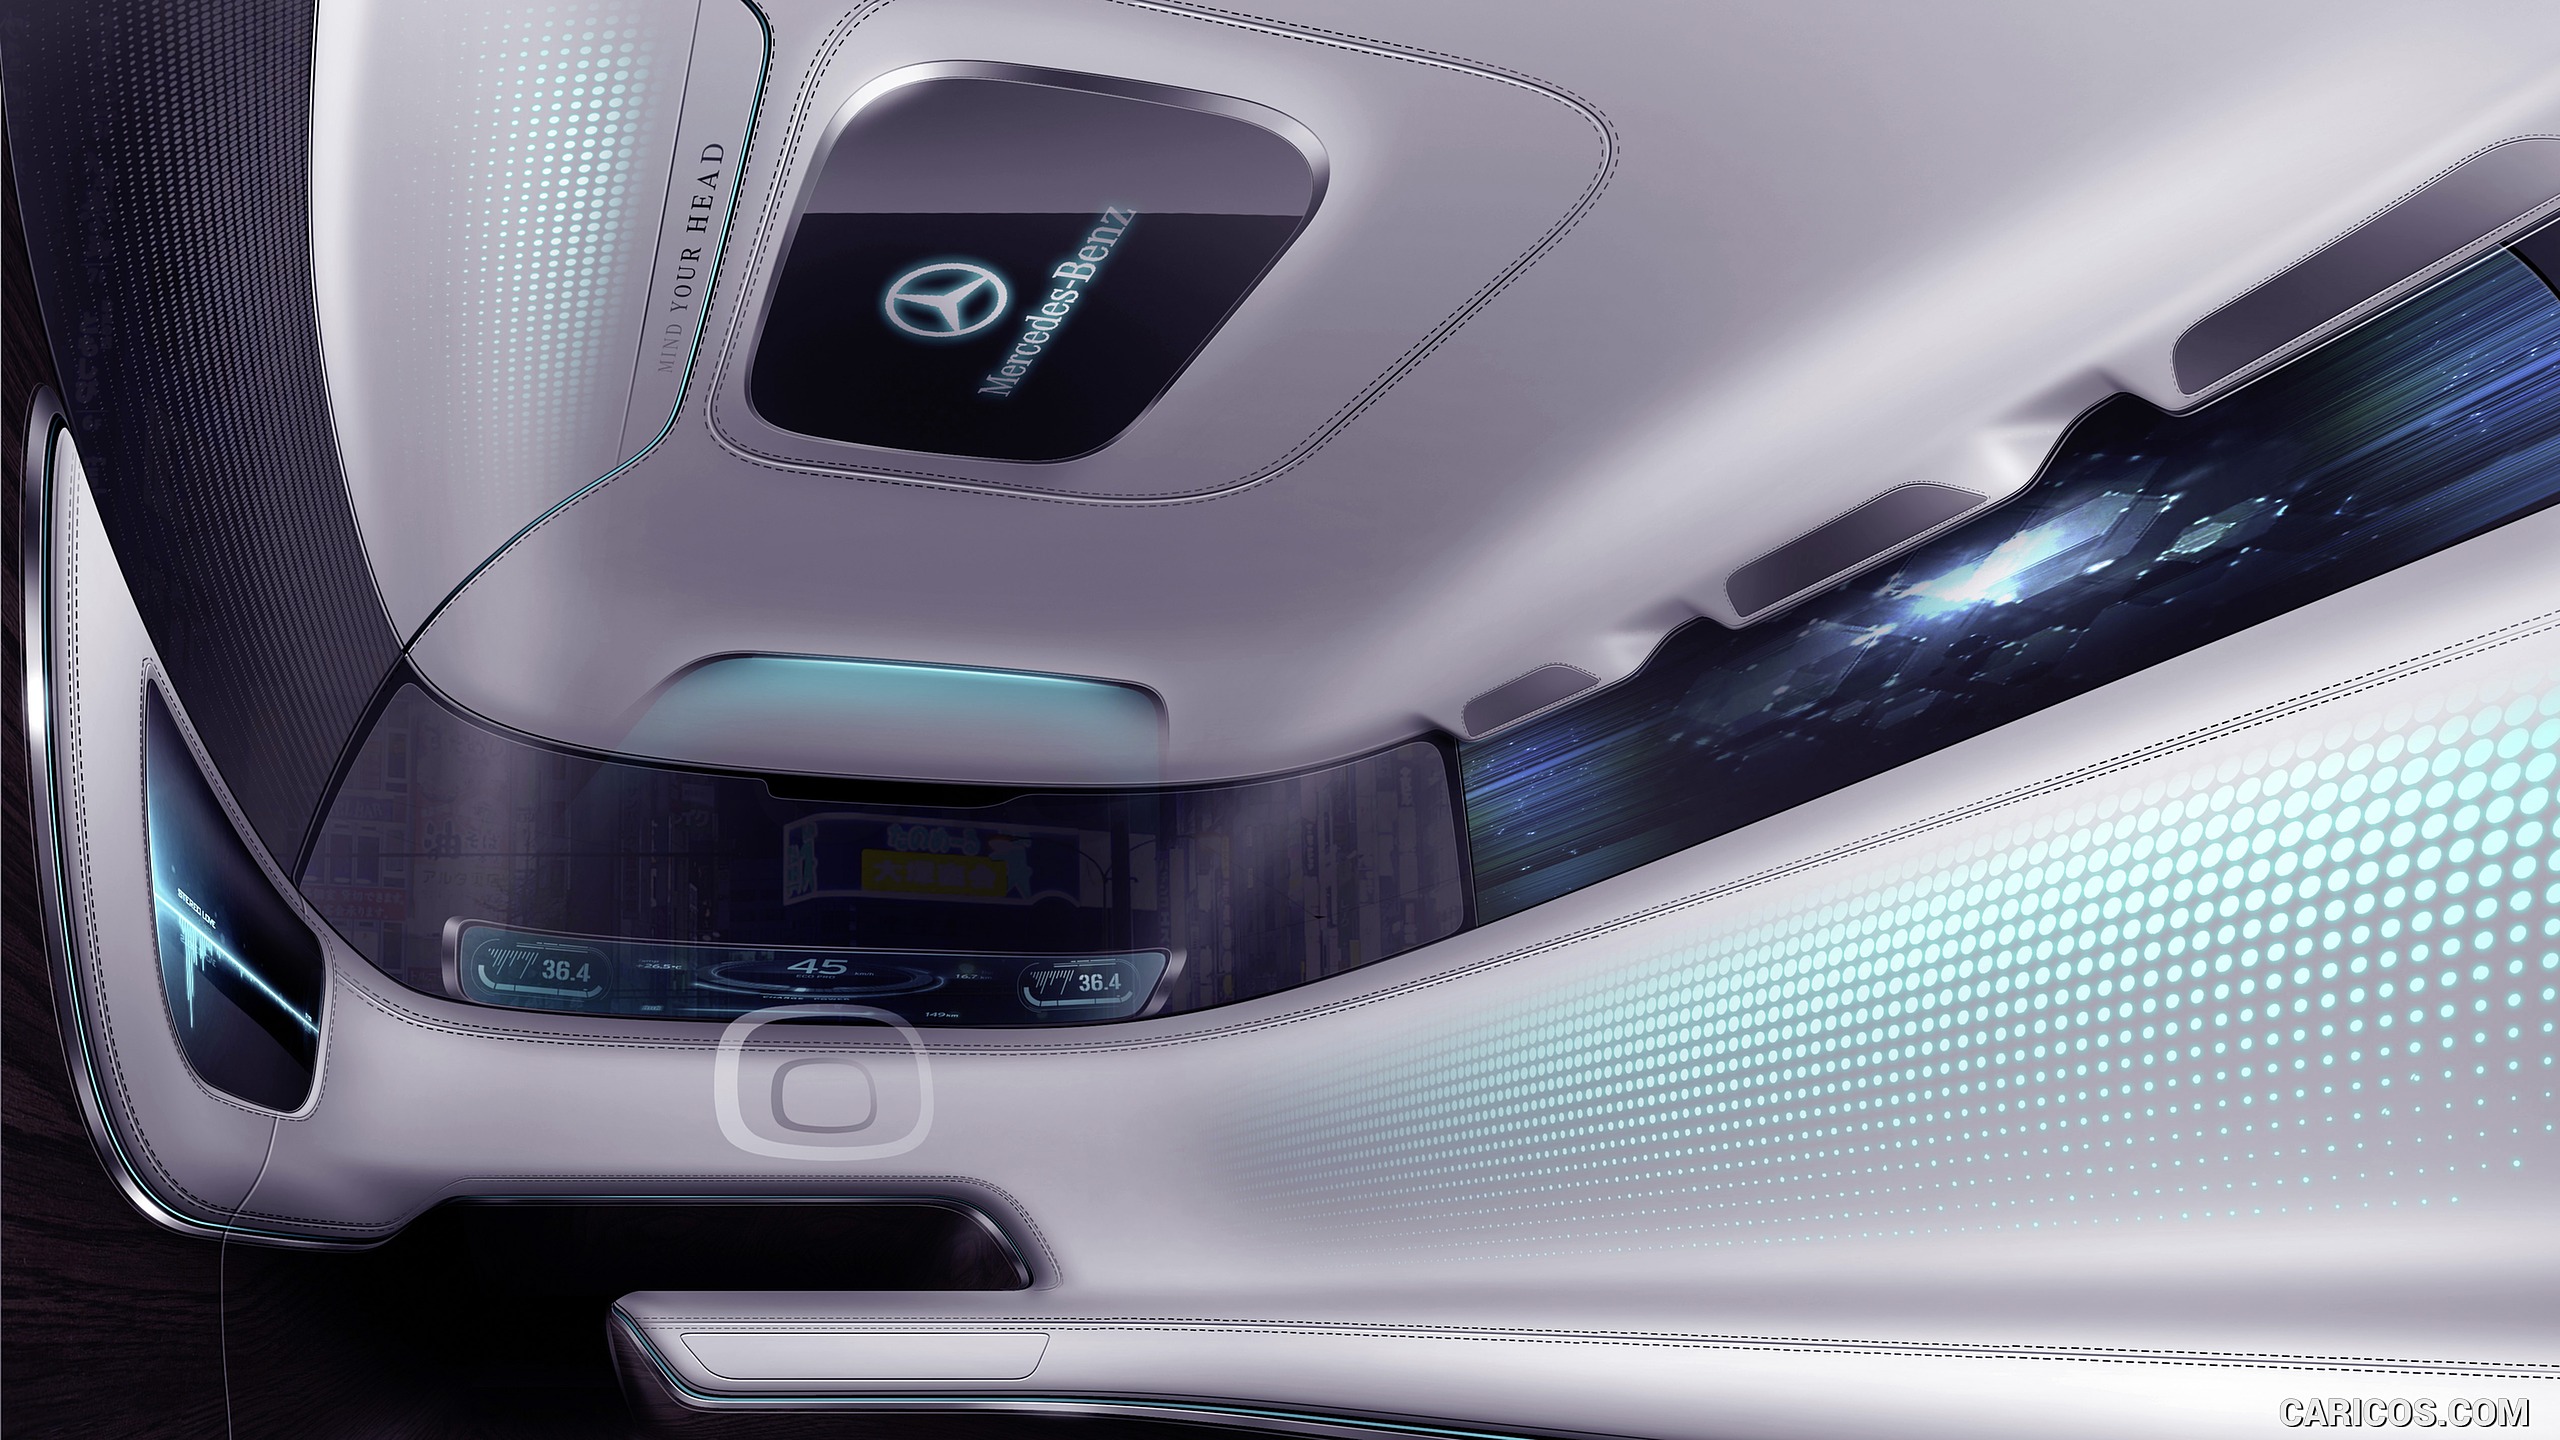 2015 Mercedes-Benz Vision Tokyo Concept - Interior, #22 of 22